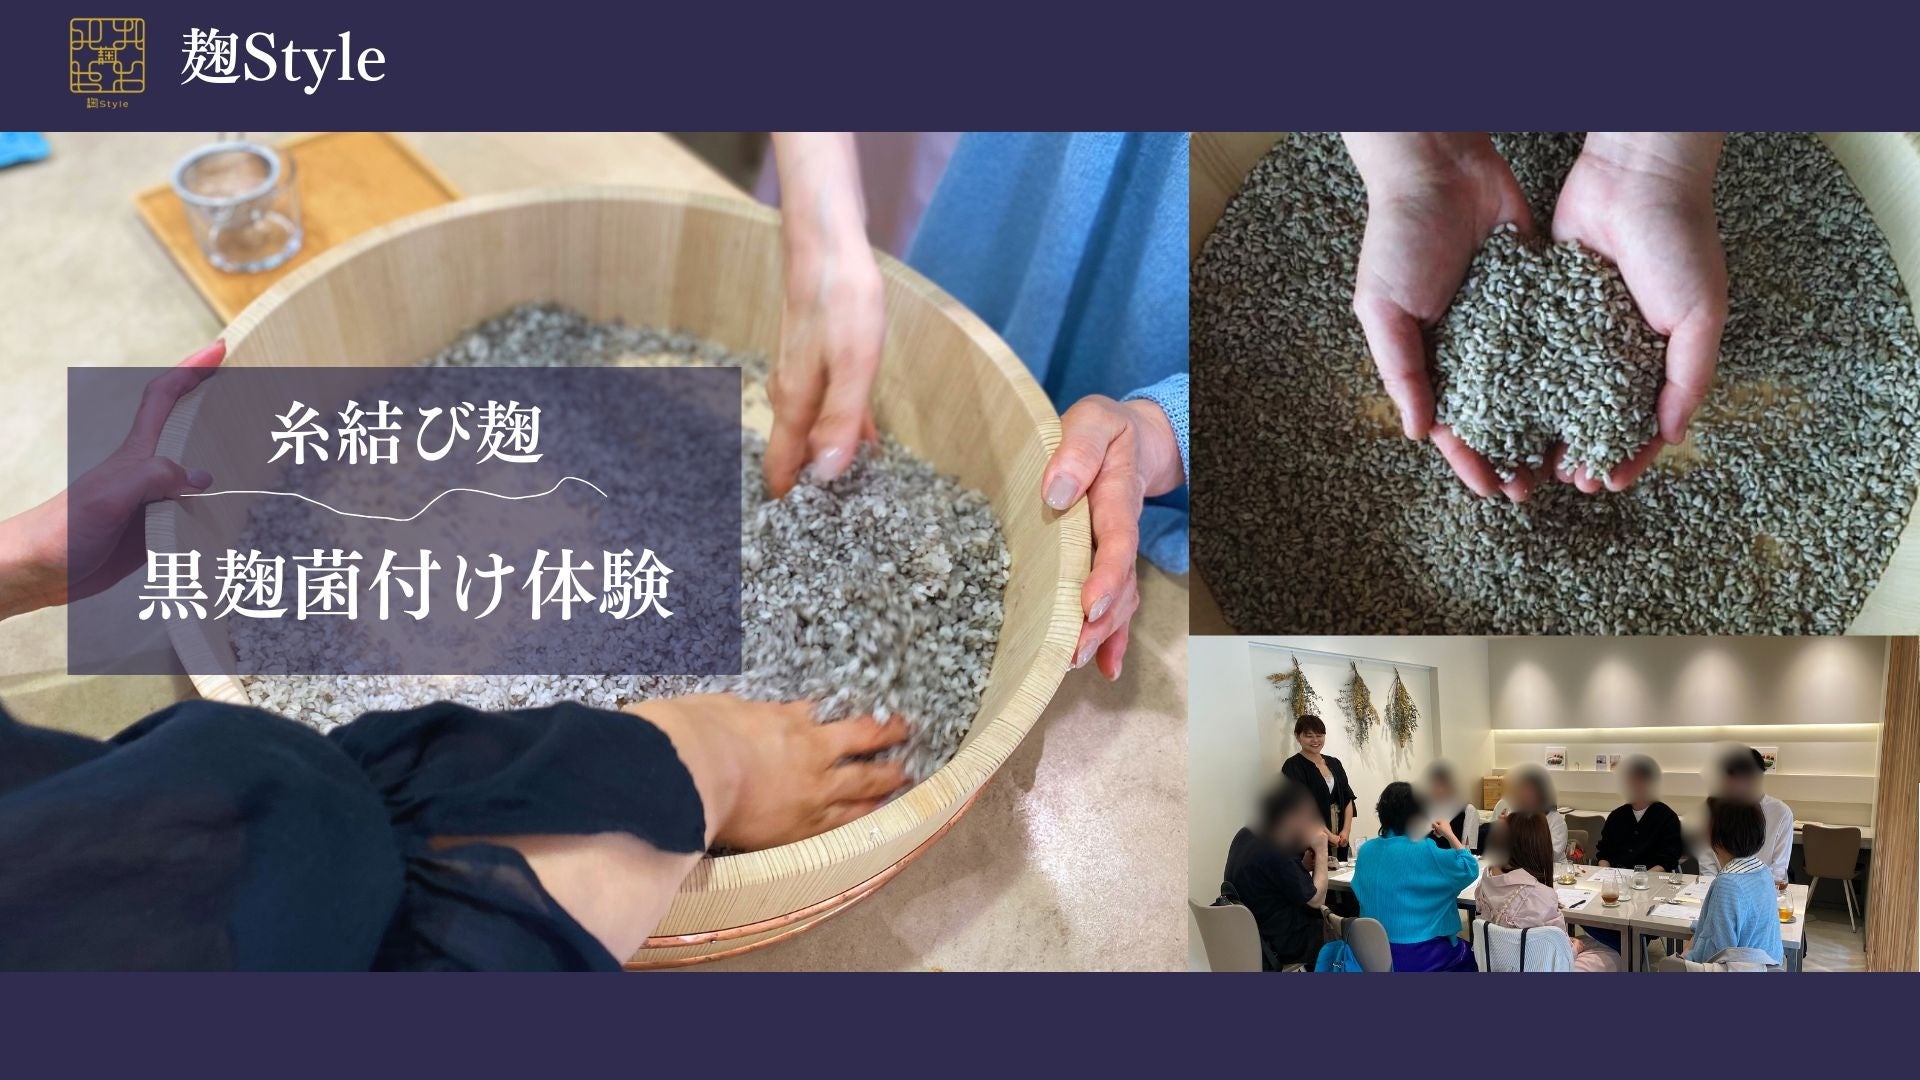 麹Style株式会社が「国菌」である「黒麹」の麹づくり体験を鎌倉の麹専門カフェ「麹Style」にて開始します